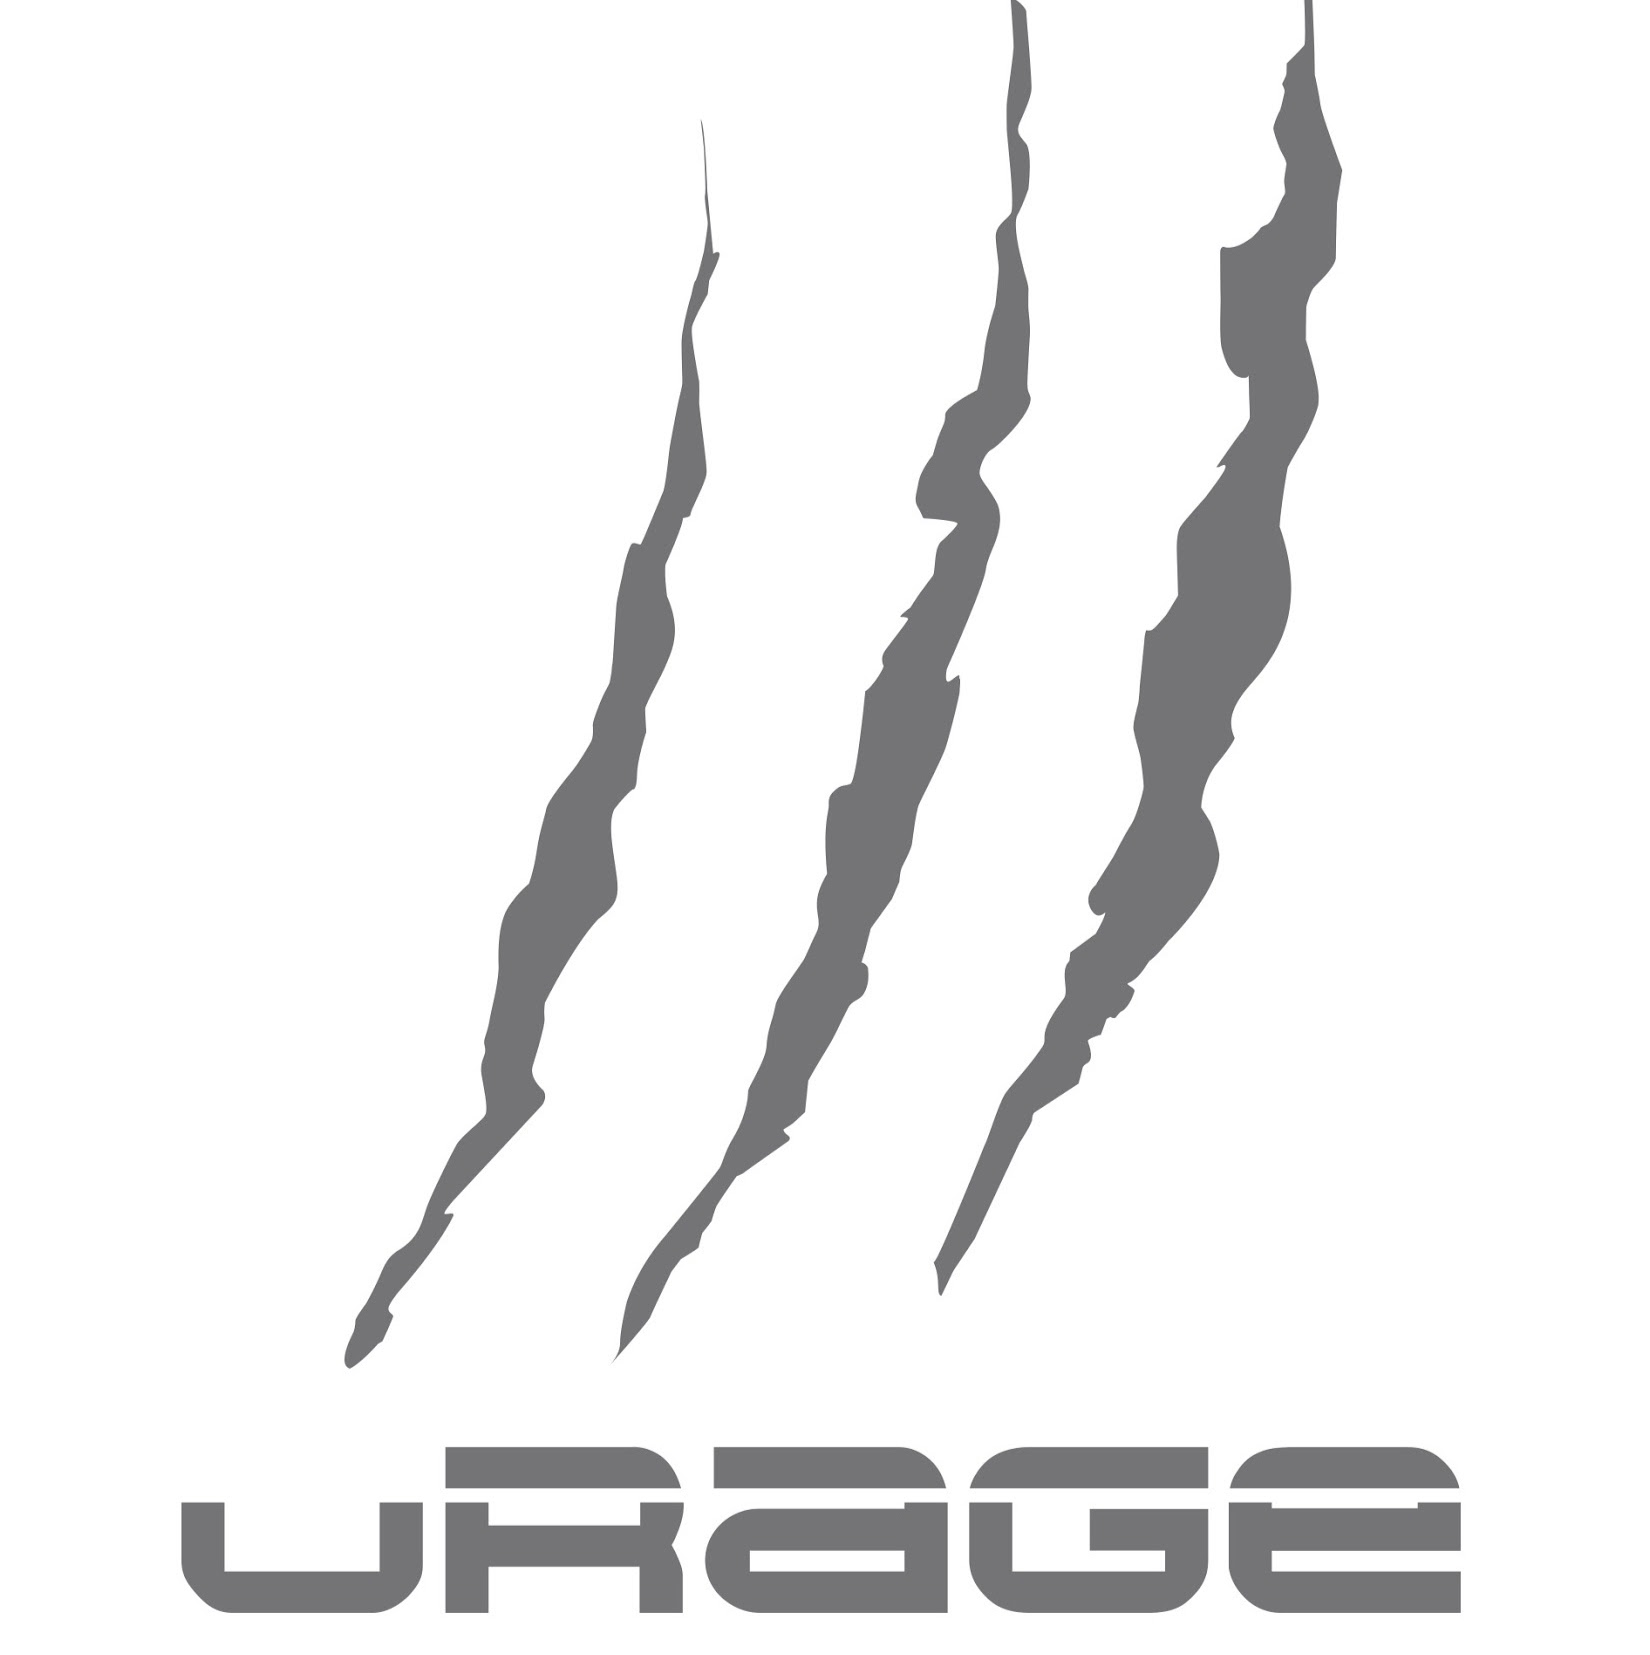 uRage